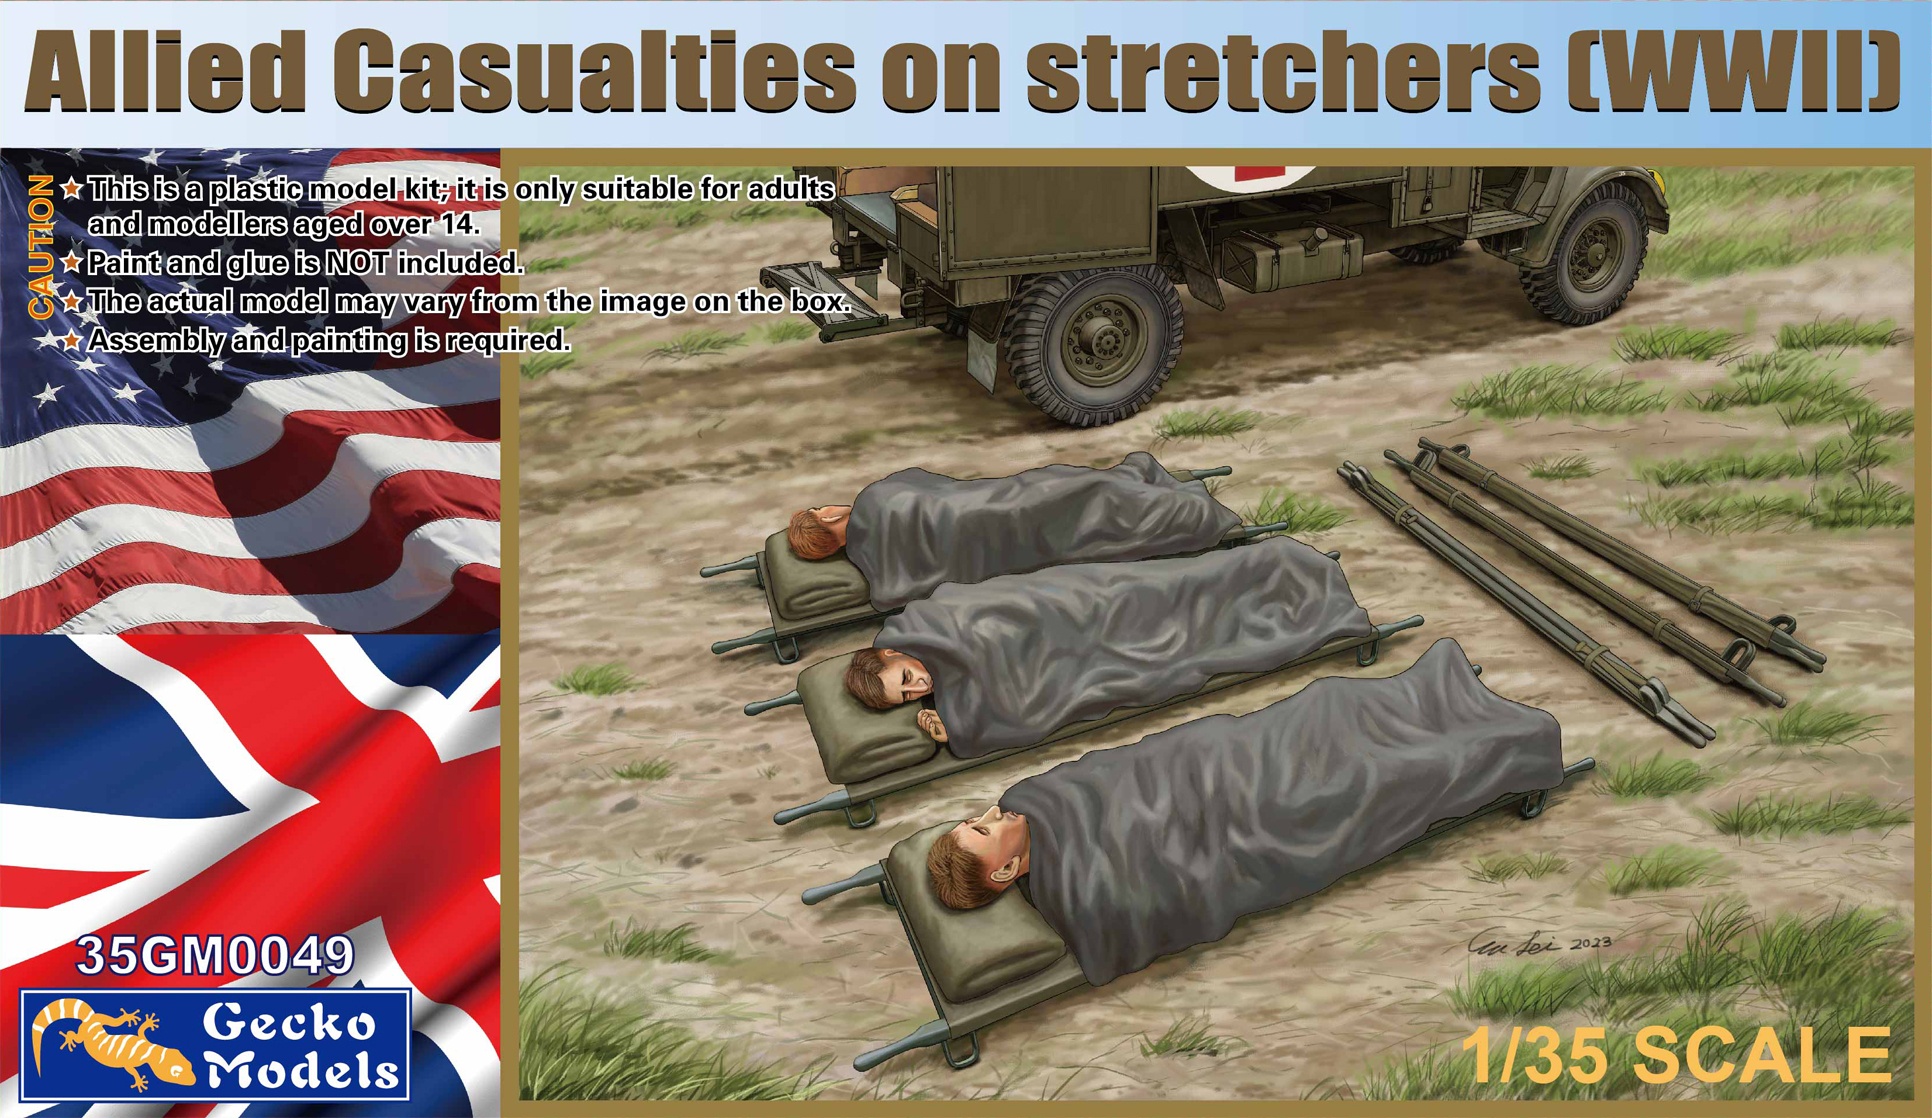 1/35 Allied Casualties on Stretchers (WWII) - Gecko